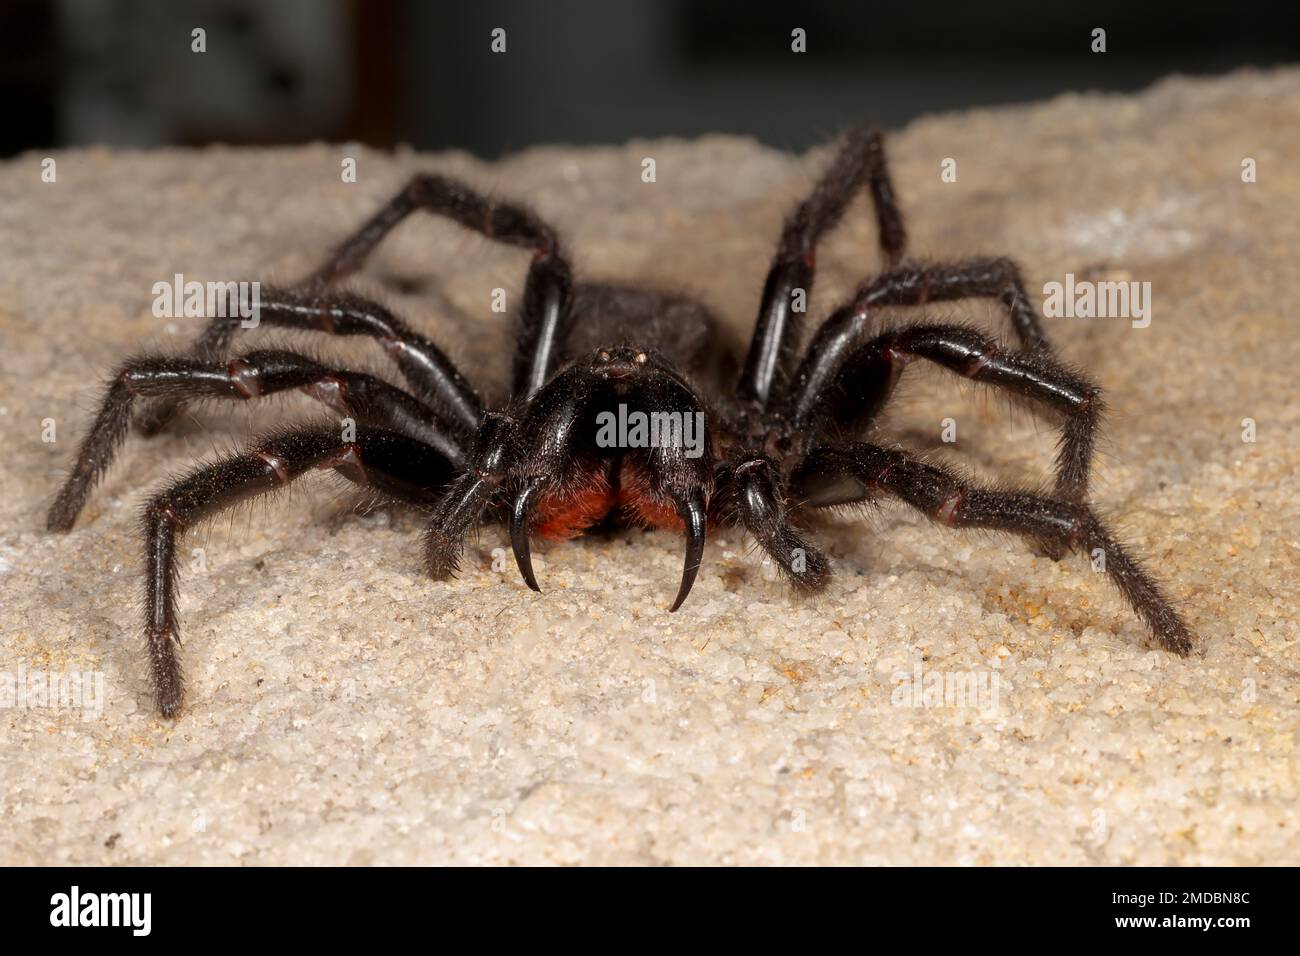 Sydney Funnel Web Spider très venimeux Banque D'Images